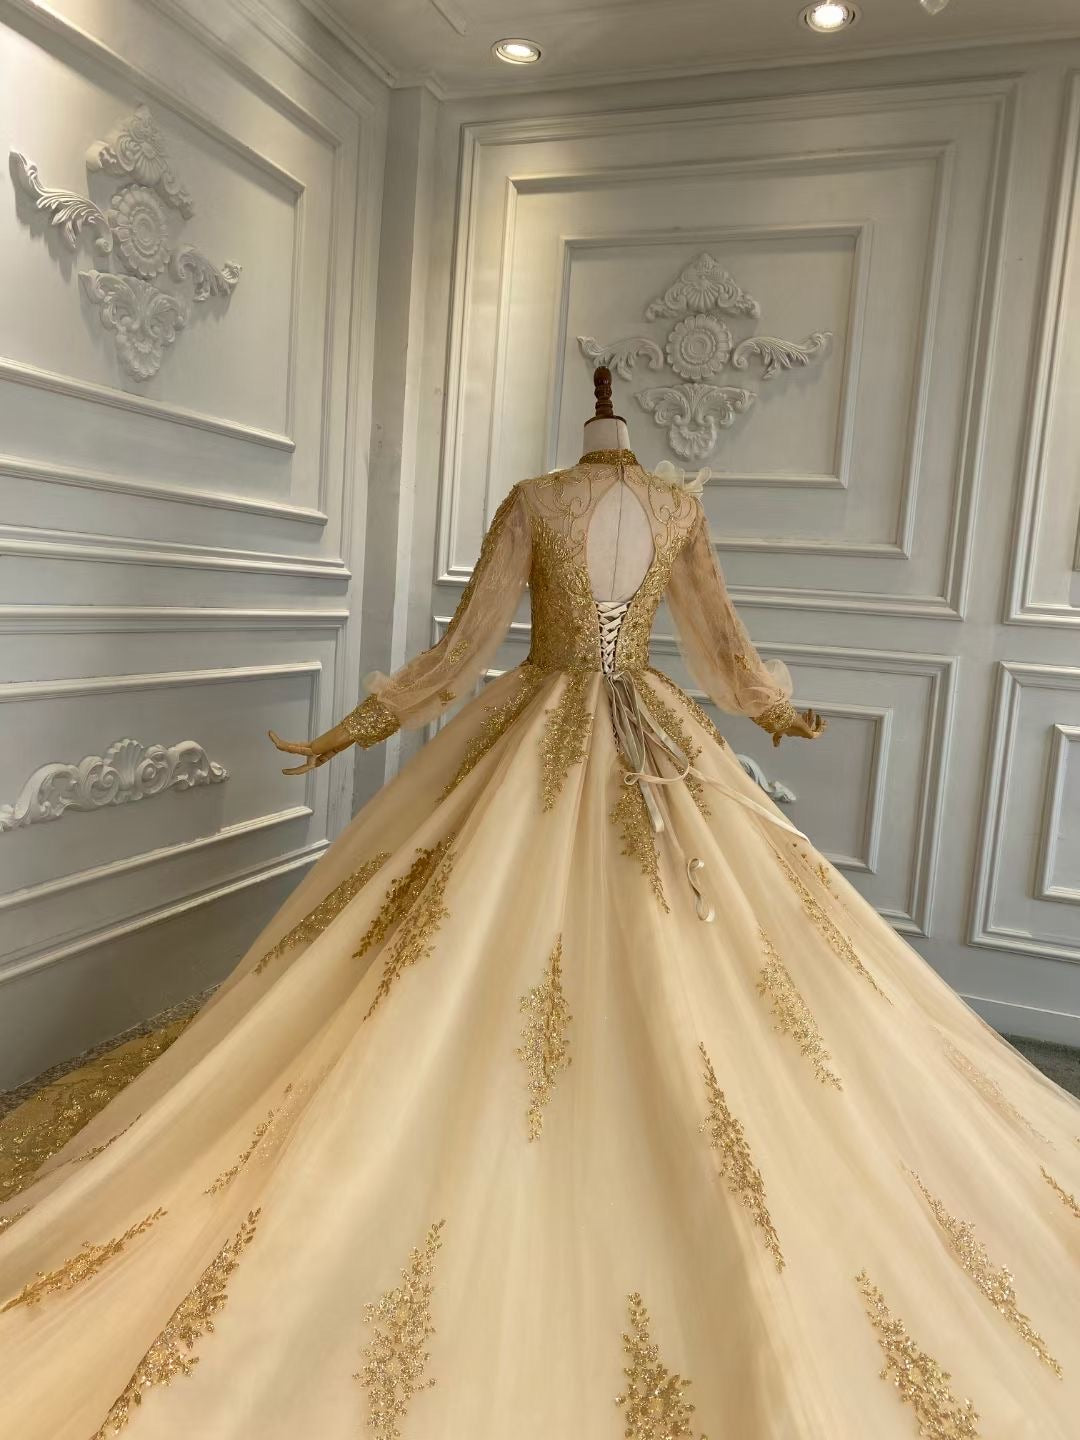 65+ Best Wedding Dresses Spring 2020 - Top Spring Bridal Runway Looks